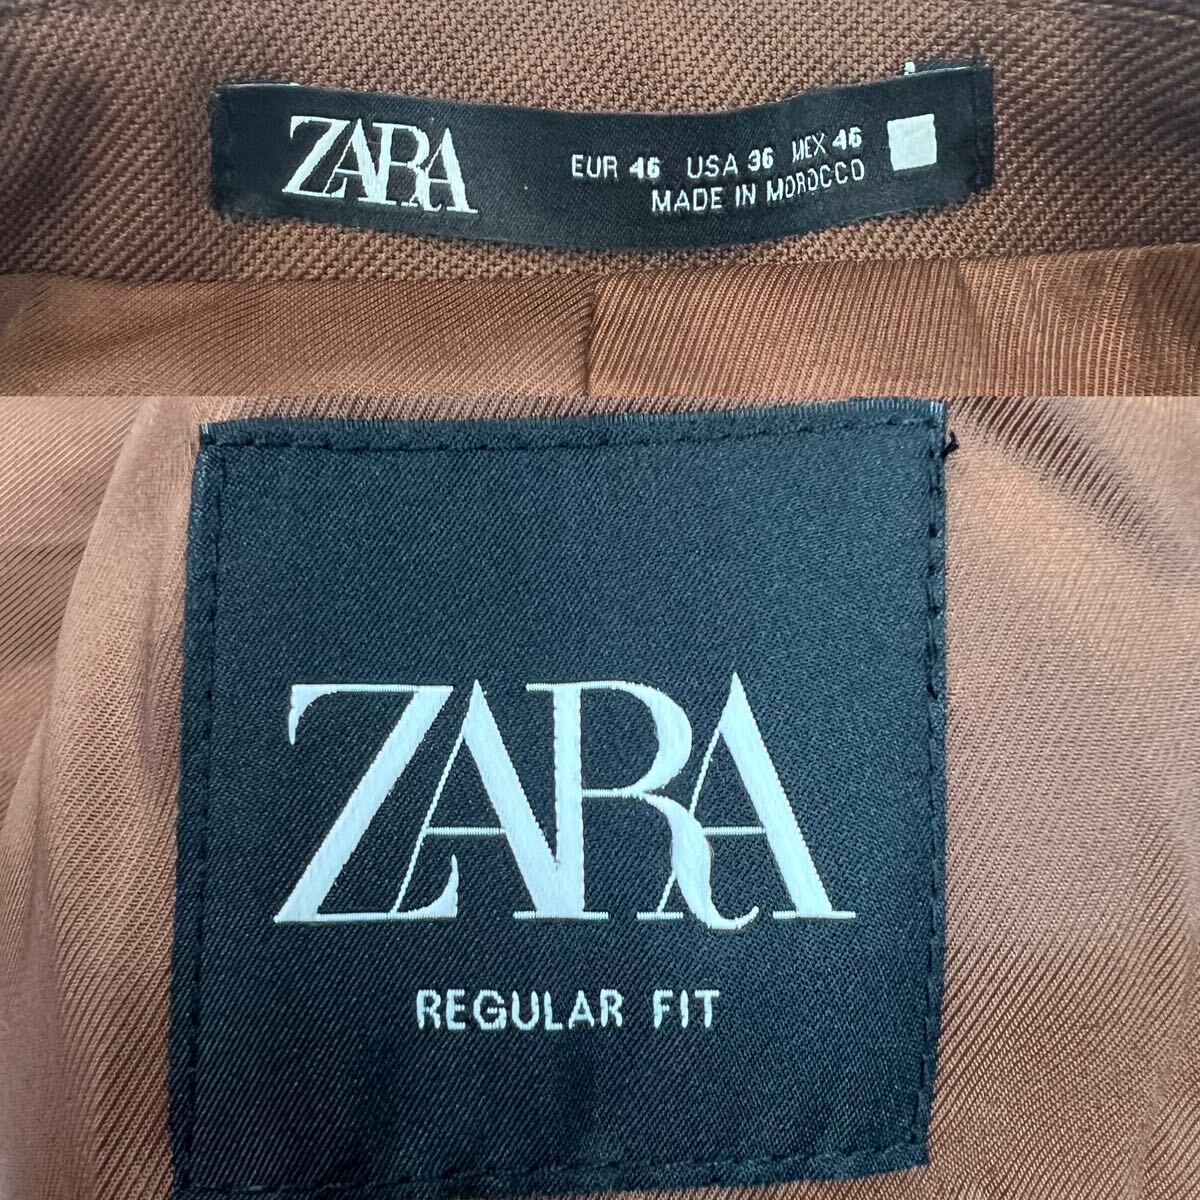 極美品 ZARA MAN ザラマン 1Bテーラードジャケット サイズ46/M相当 ブラウン オールシーズン可能 美シルエット レギュラーフィット A2383_画像8